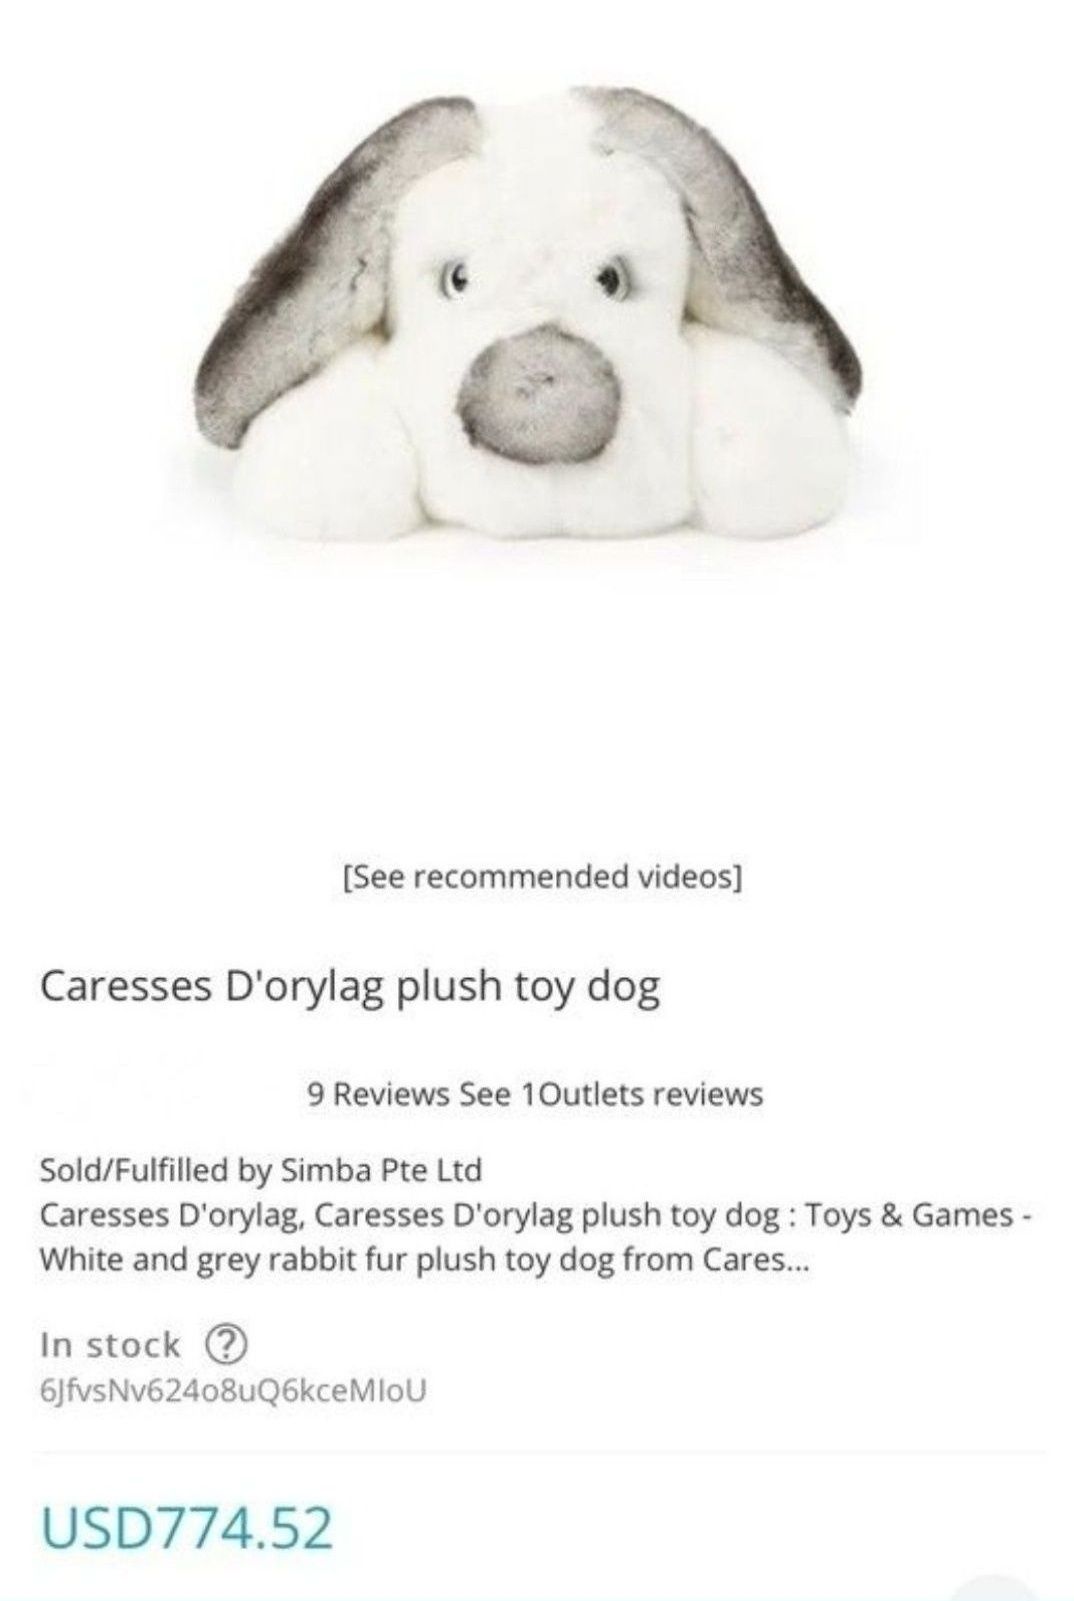 Caresses d'Orylag игрушка собака оригинал франция